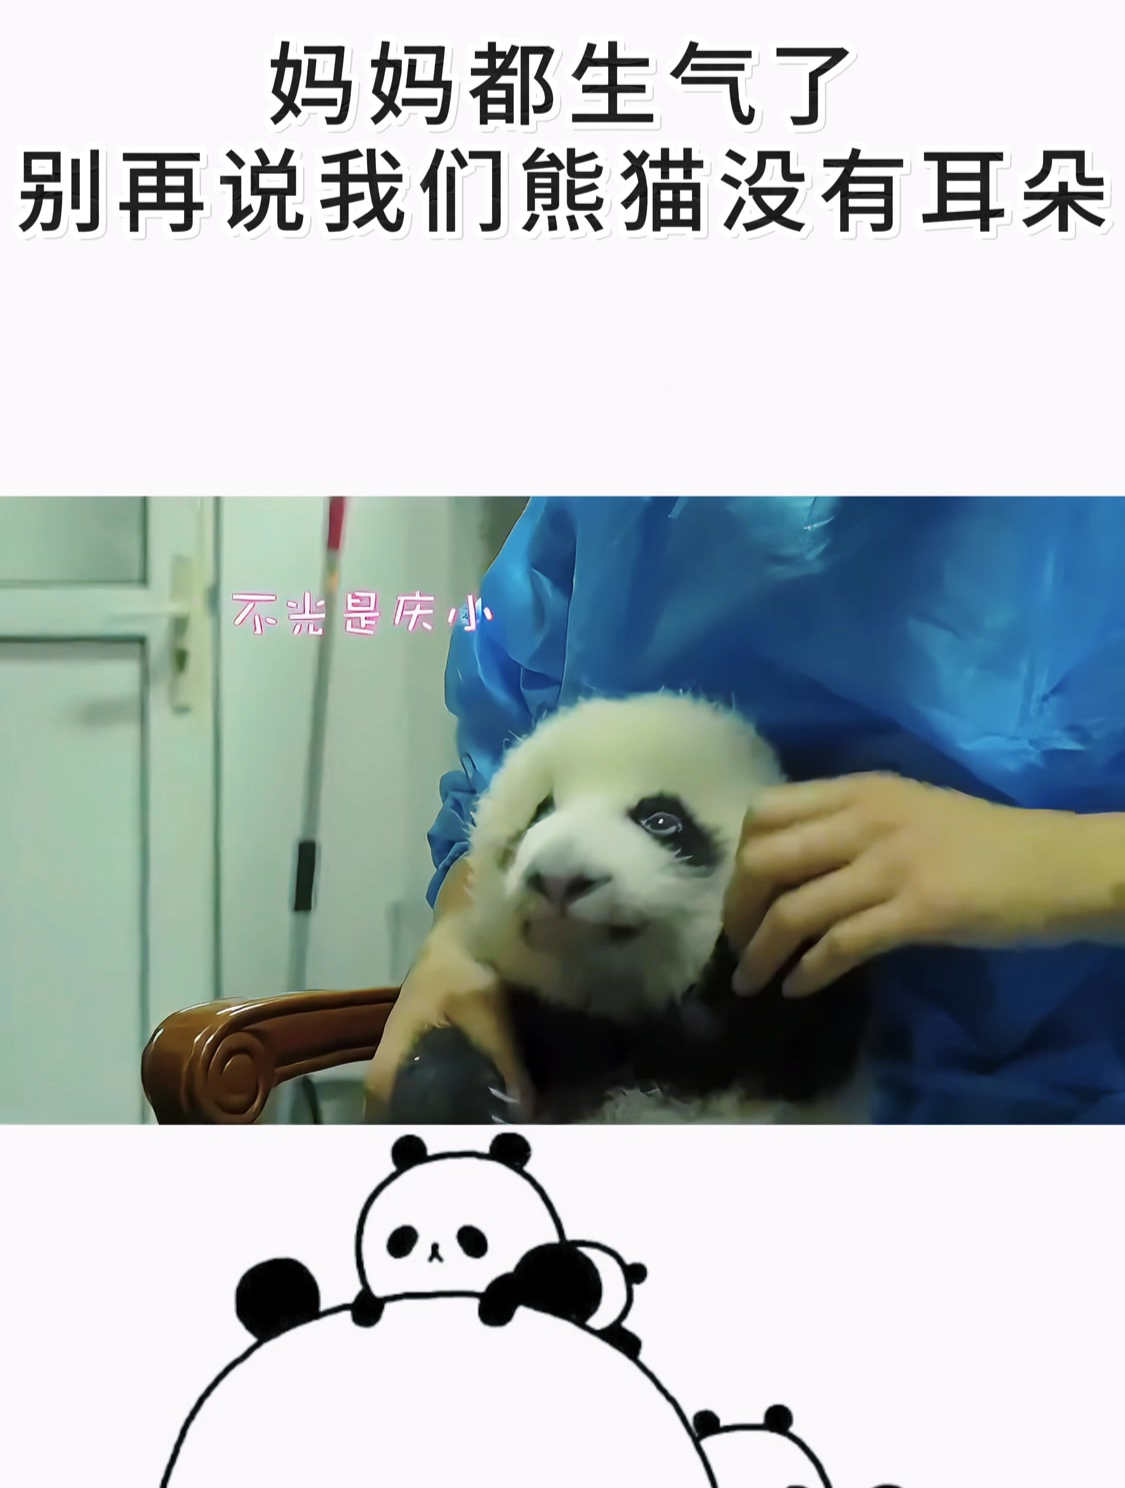 熊猫在耳边说话表情包图片